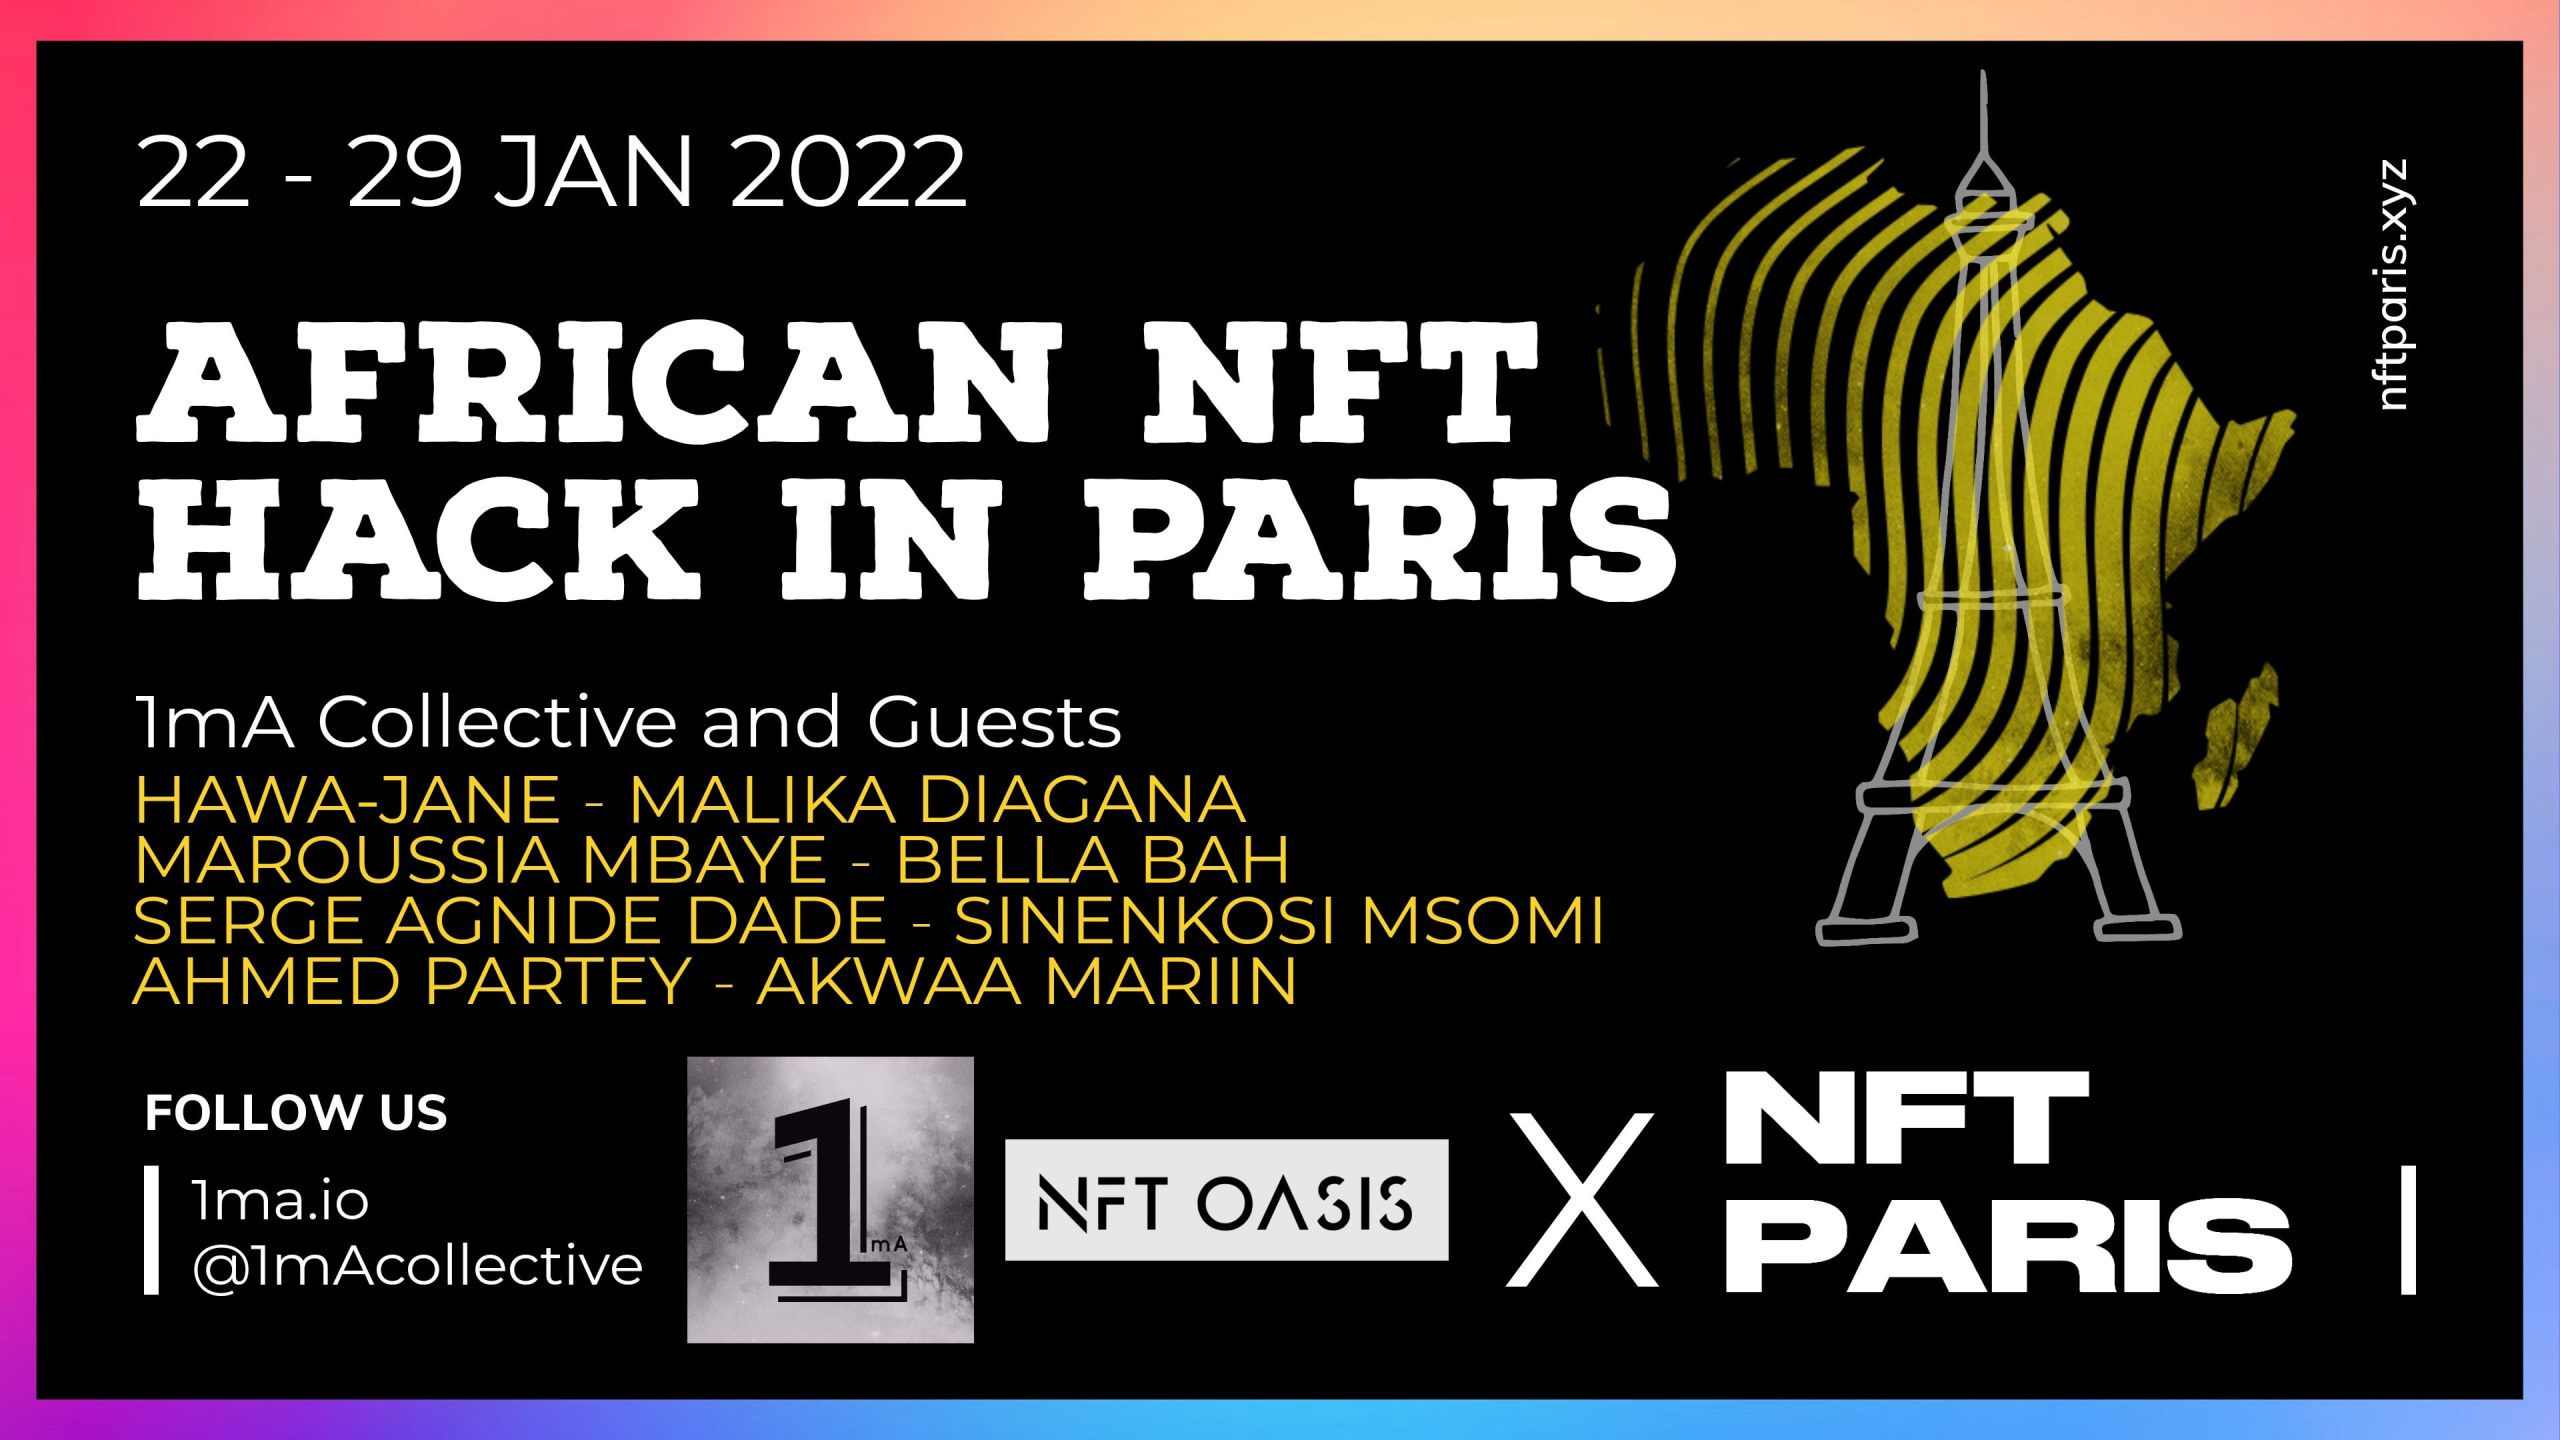 Event NFT Paris